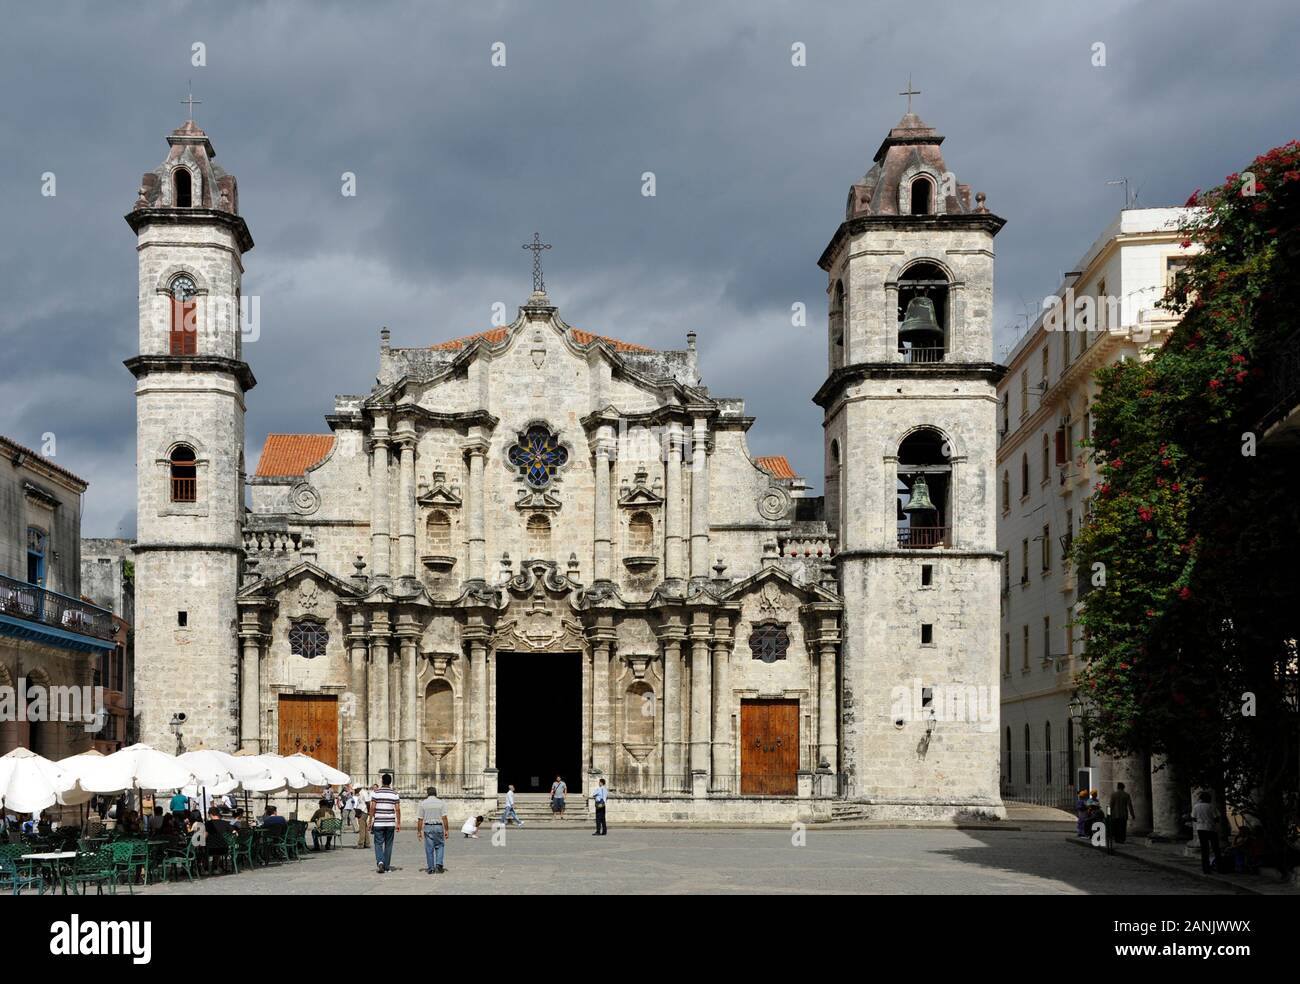 La Havane, Kathedrale San Cristobal. Kathedrale von der barocken la façade 1782. La Cathédrale San Cristobal, La Habana, Cuba |Kathedrale San Cristobal, Havan Banque D'Images